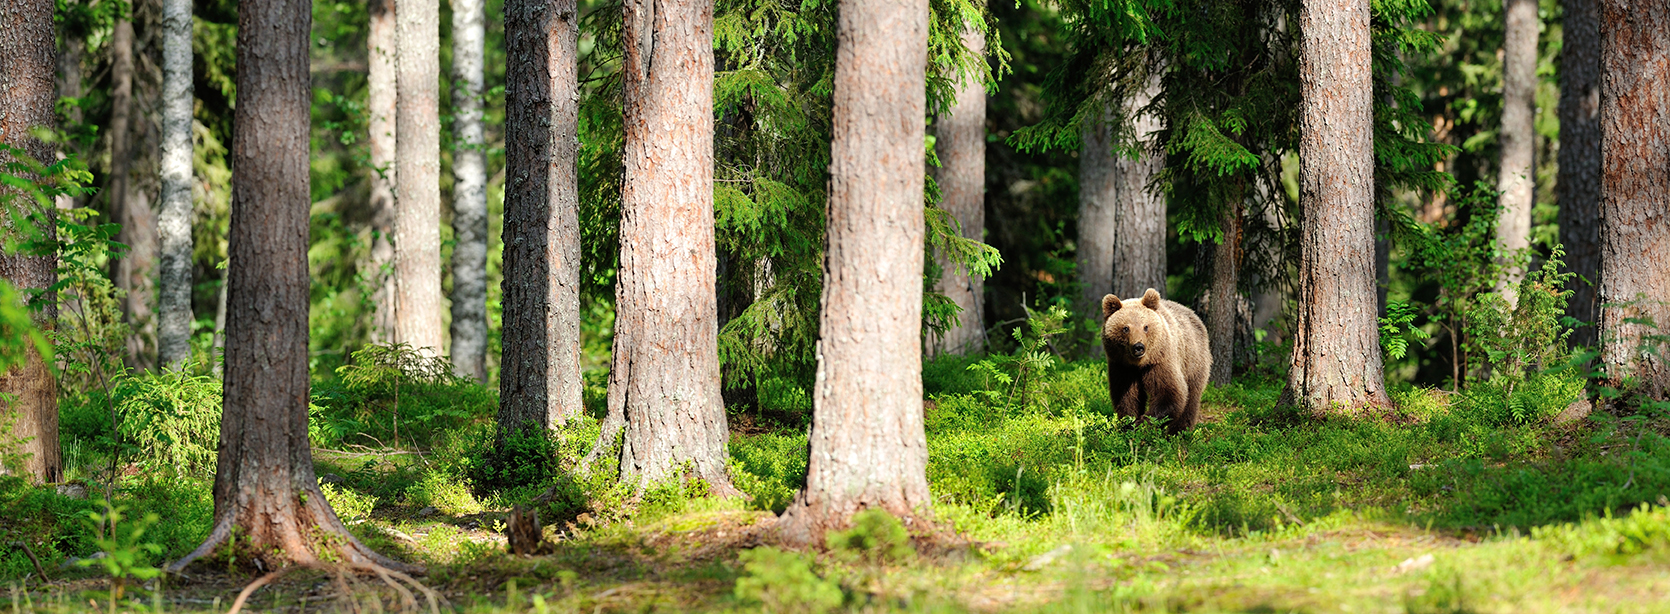 karhu suomalaisessa metsässä